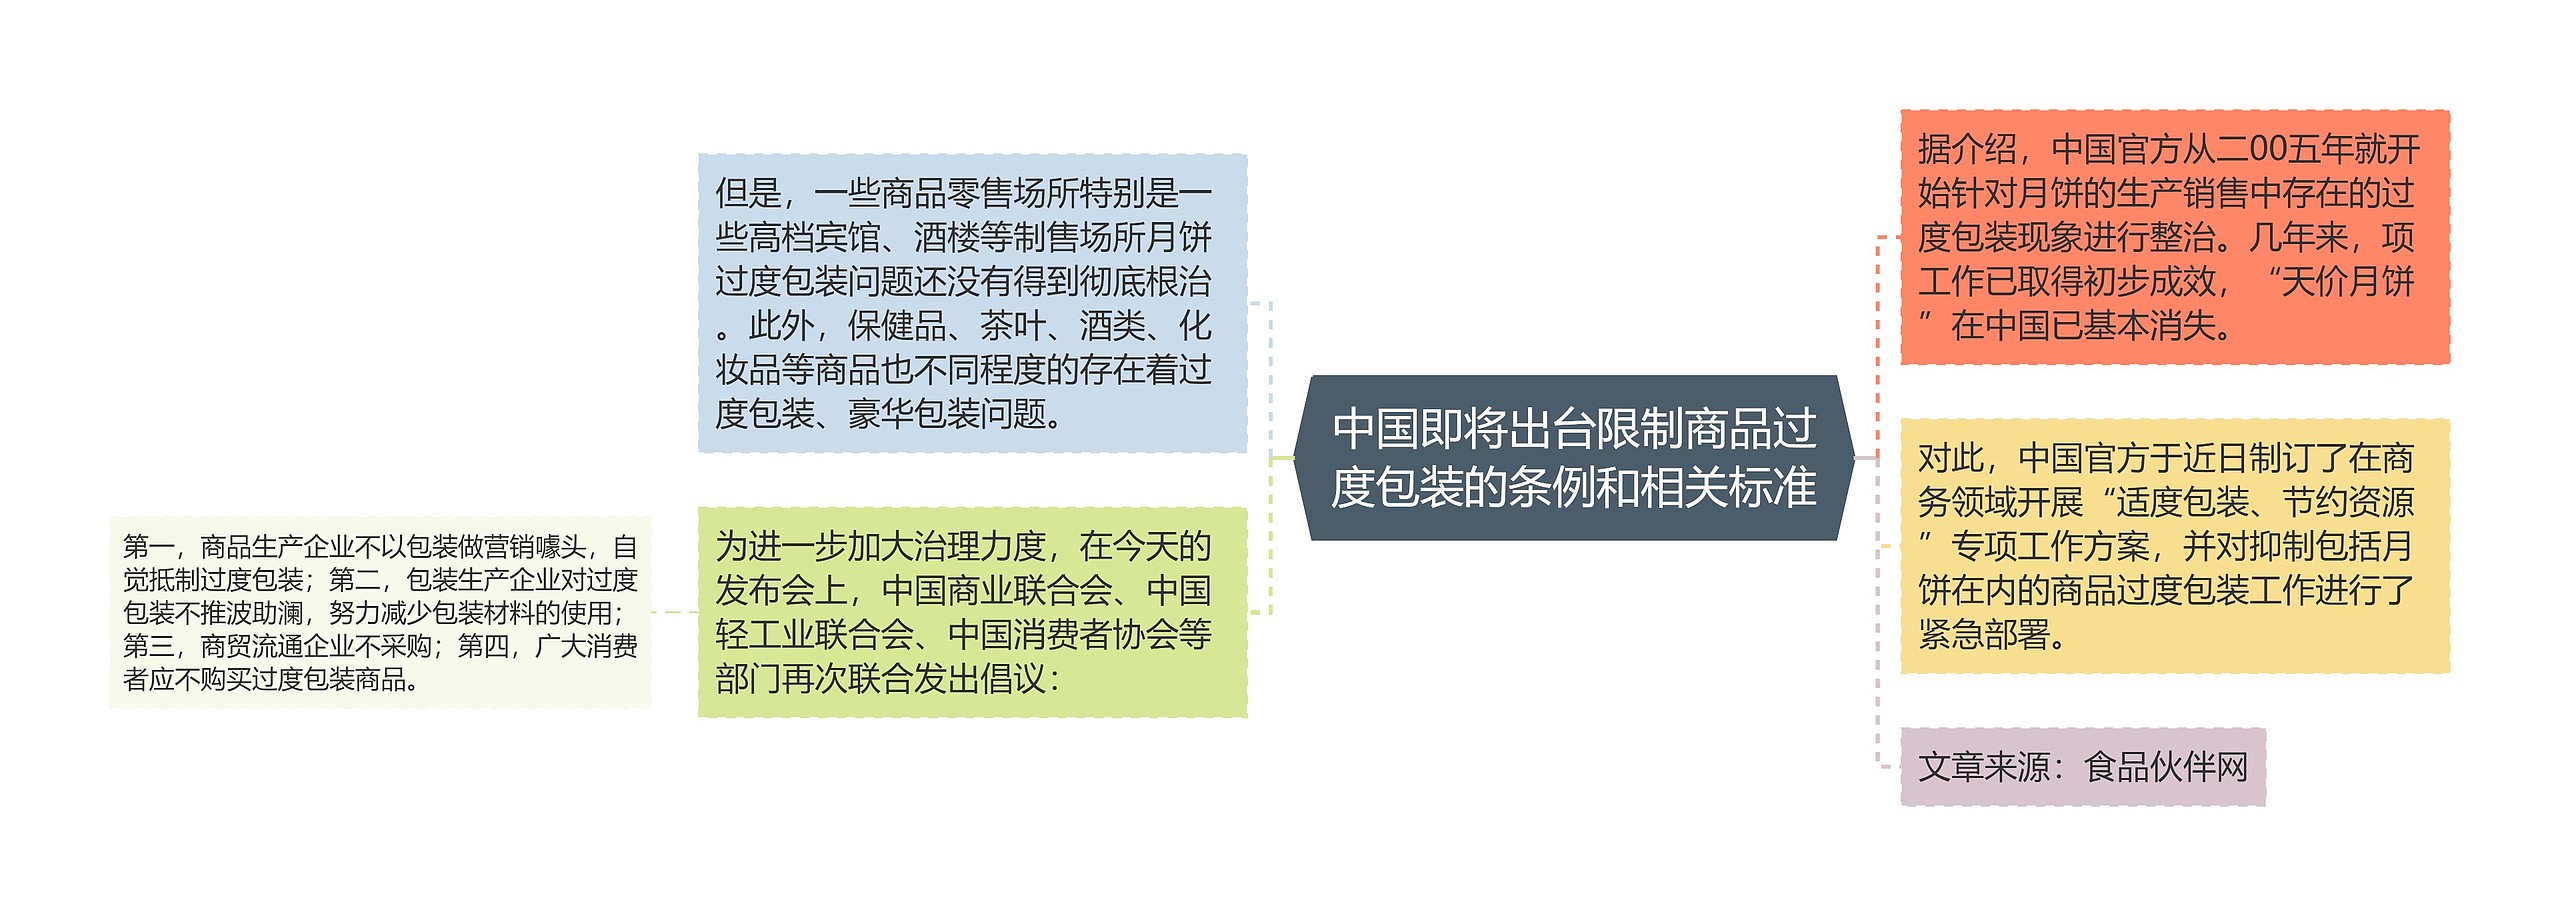 中国即将出台限制商品过度包装的条例和相关标准思维导图